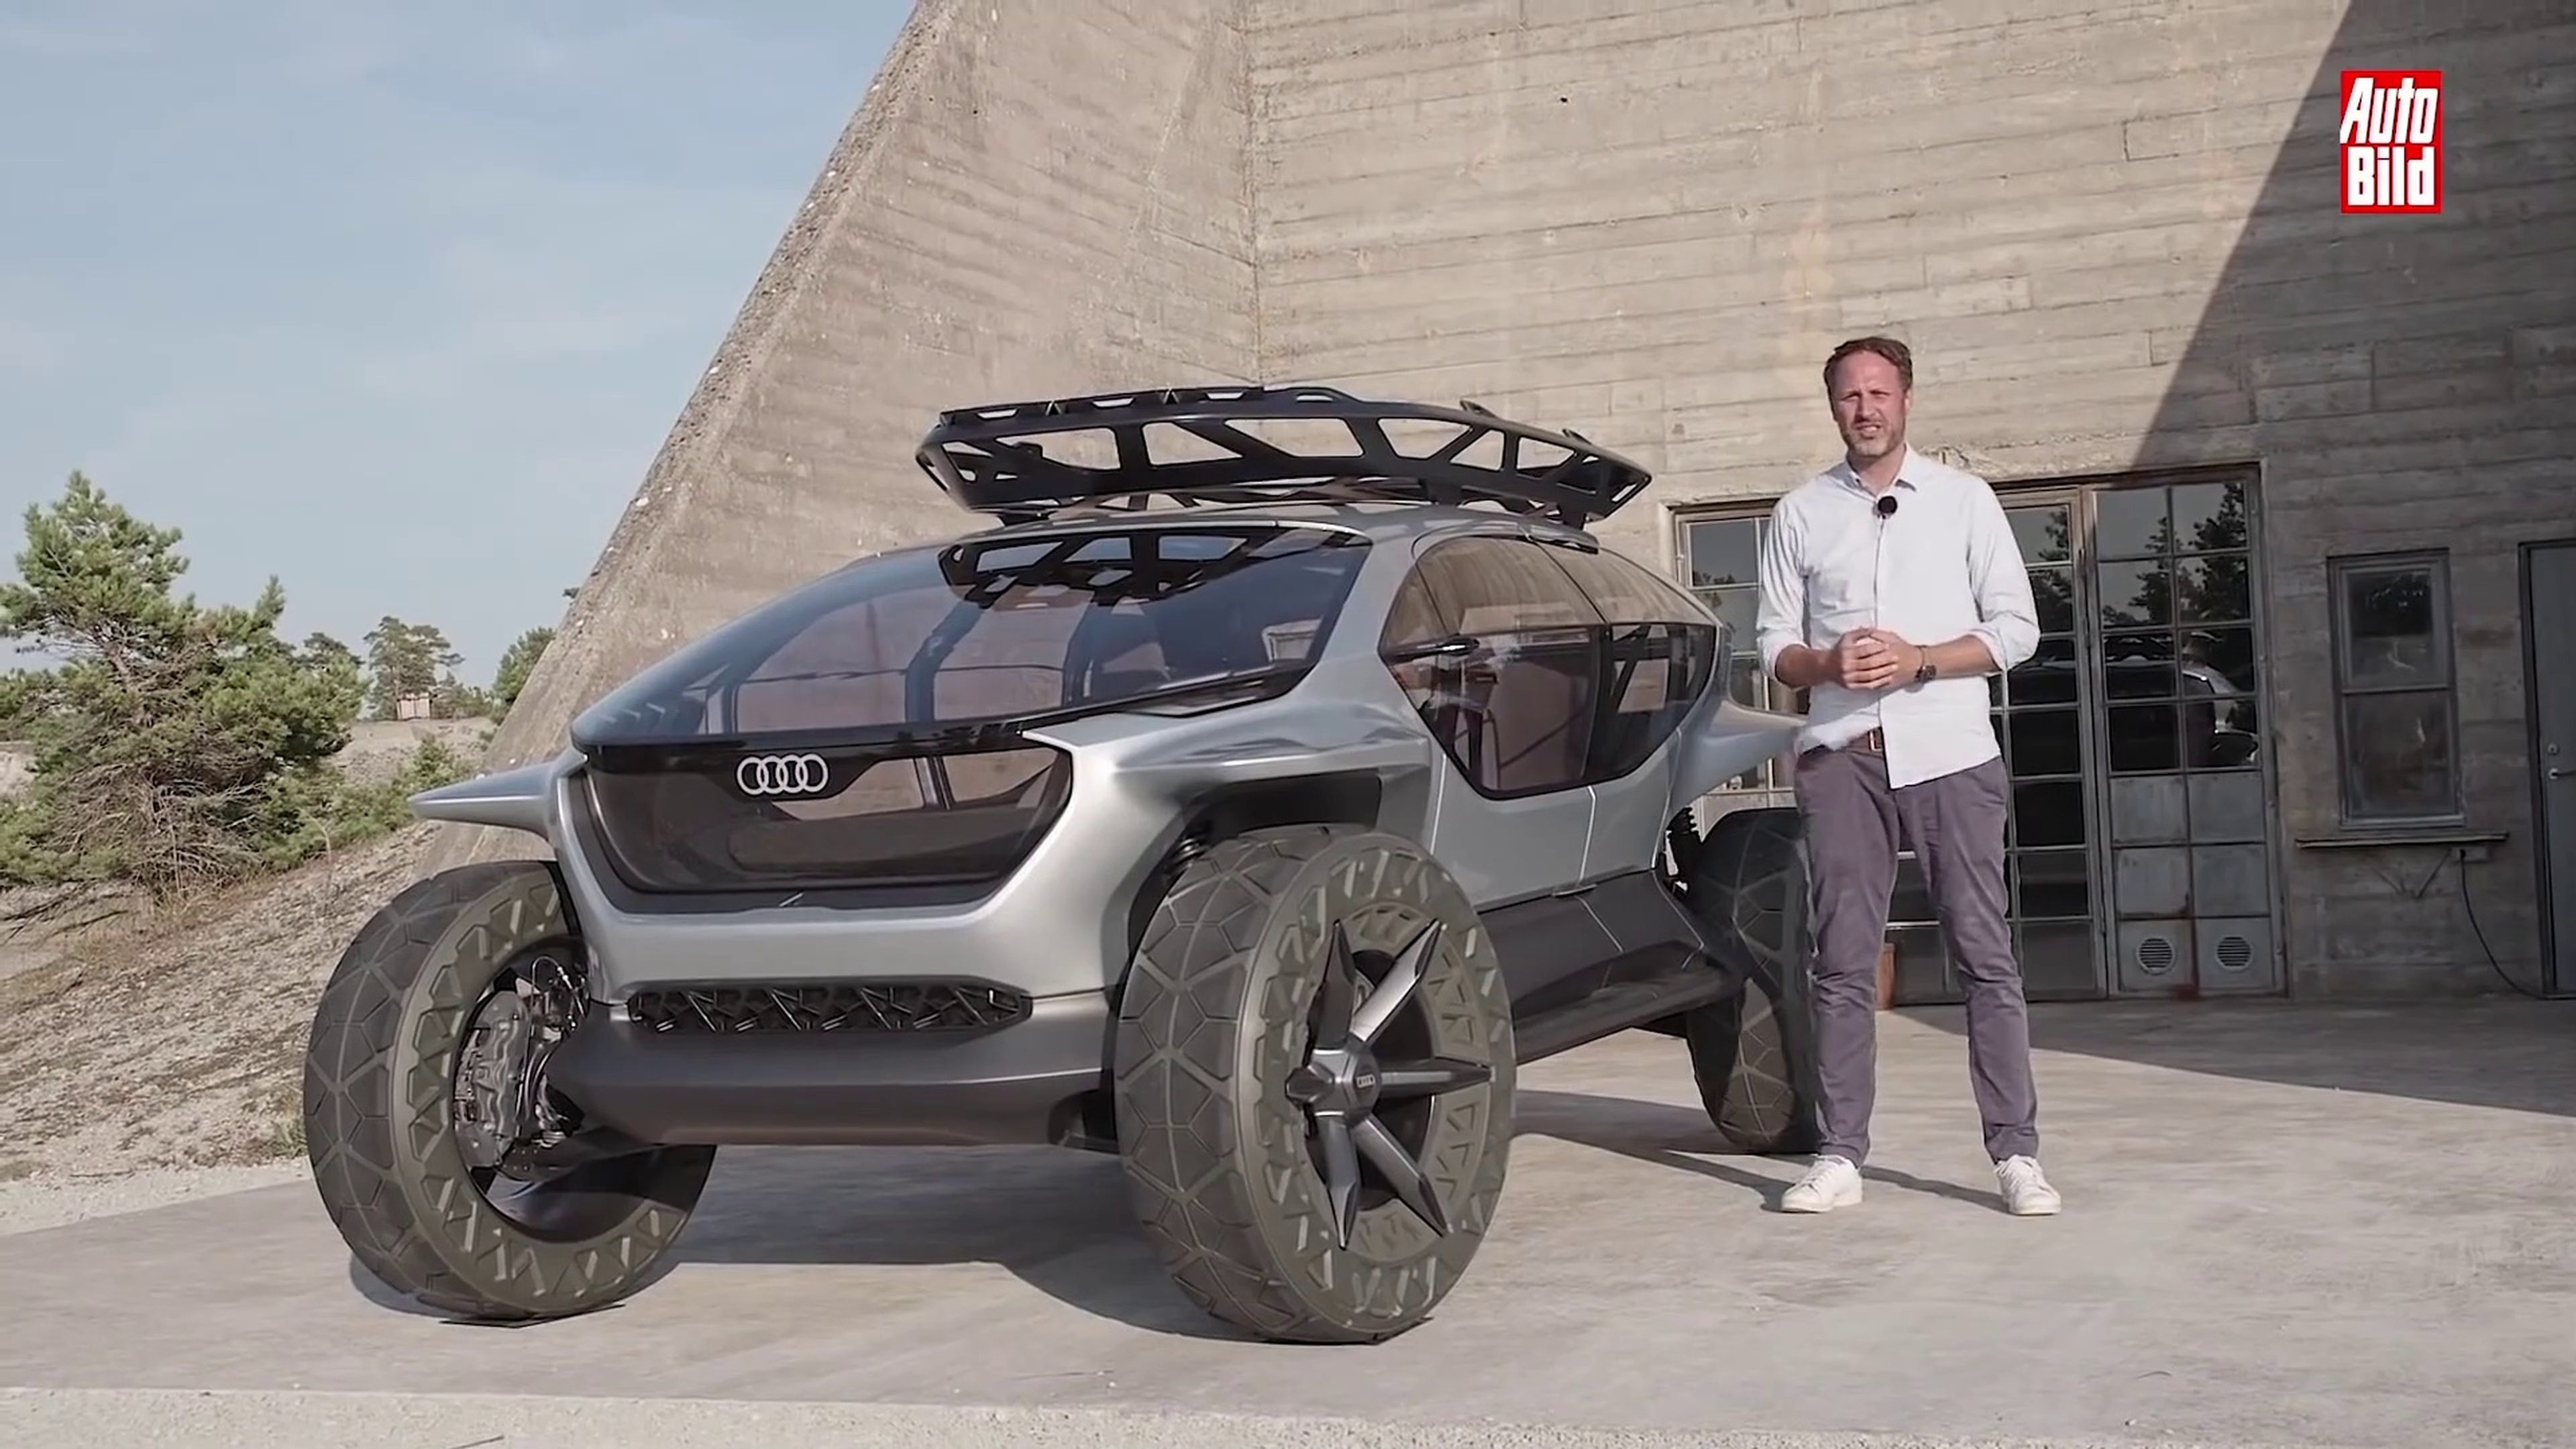 VÍDEO: Audi Al Trail, todos los detalles de este súper 4x4